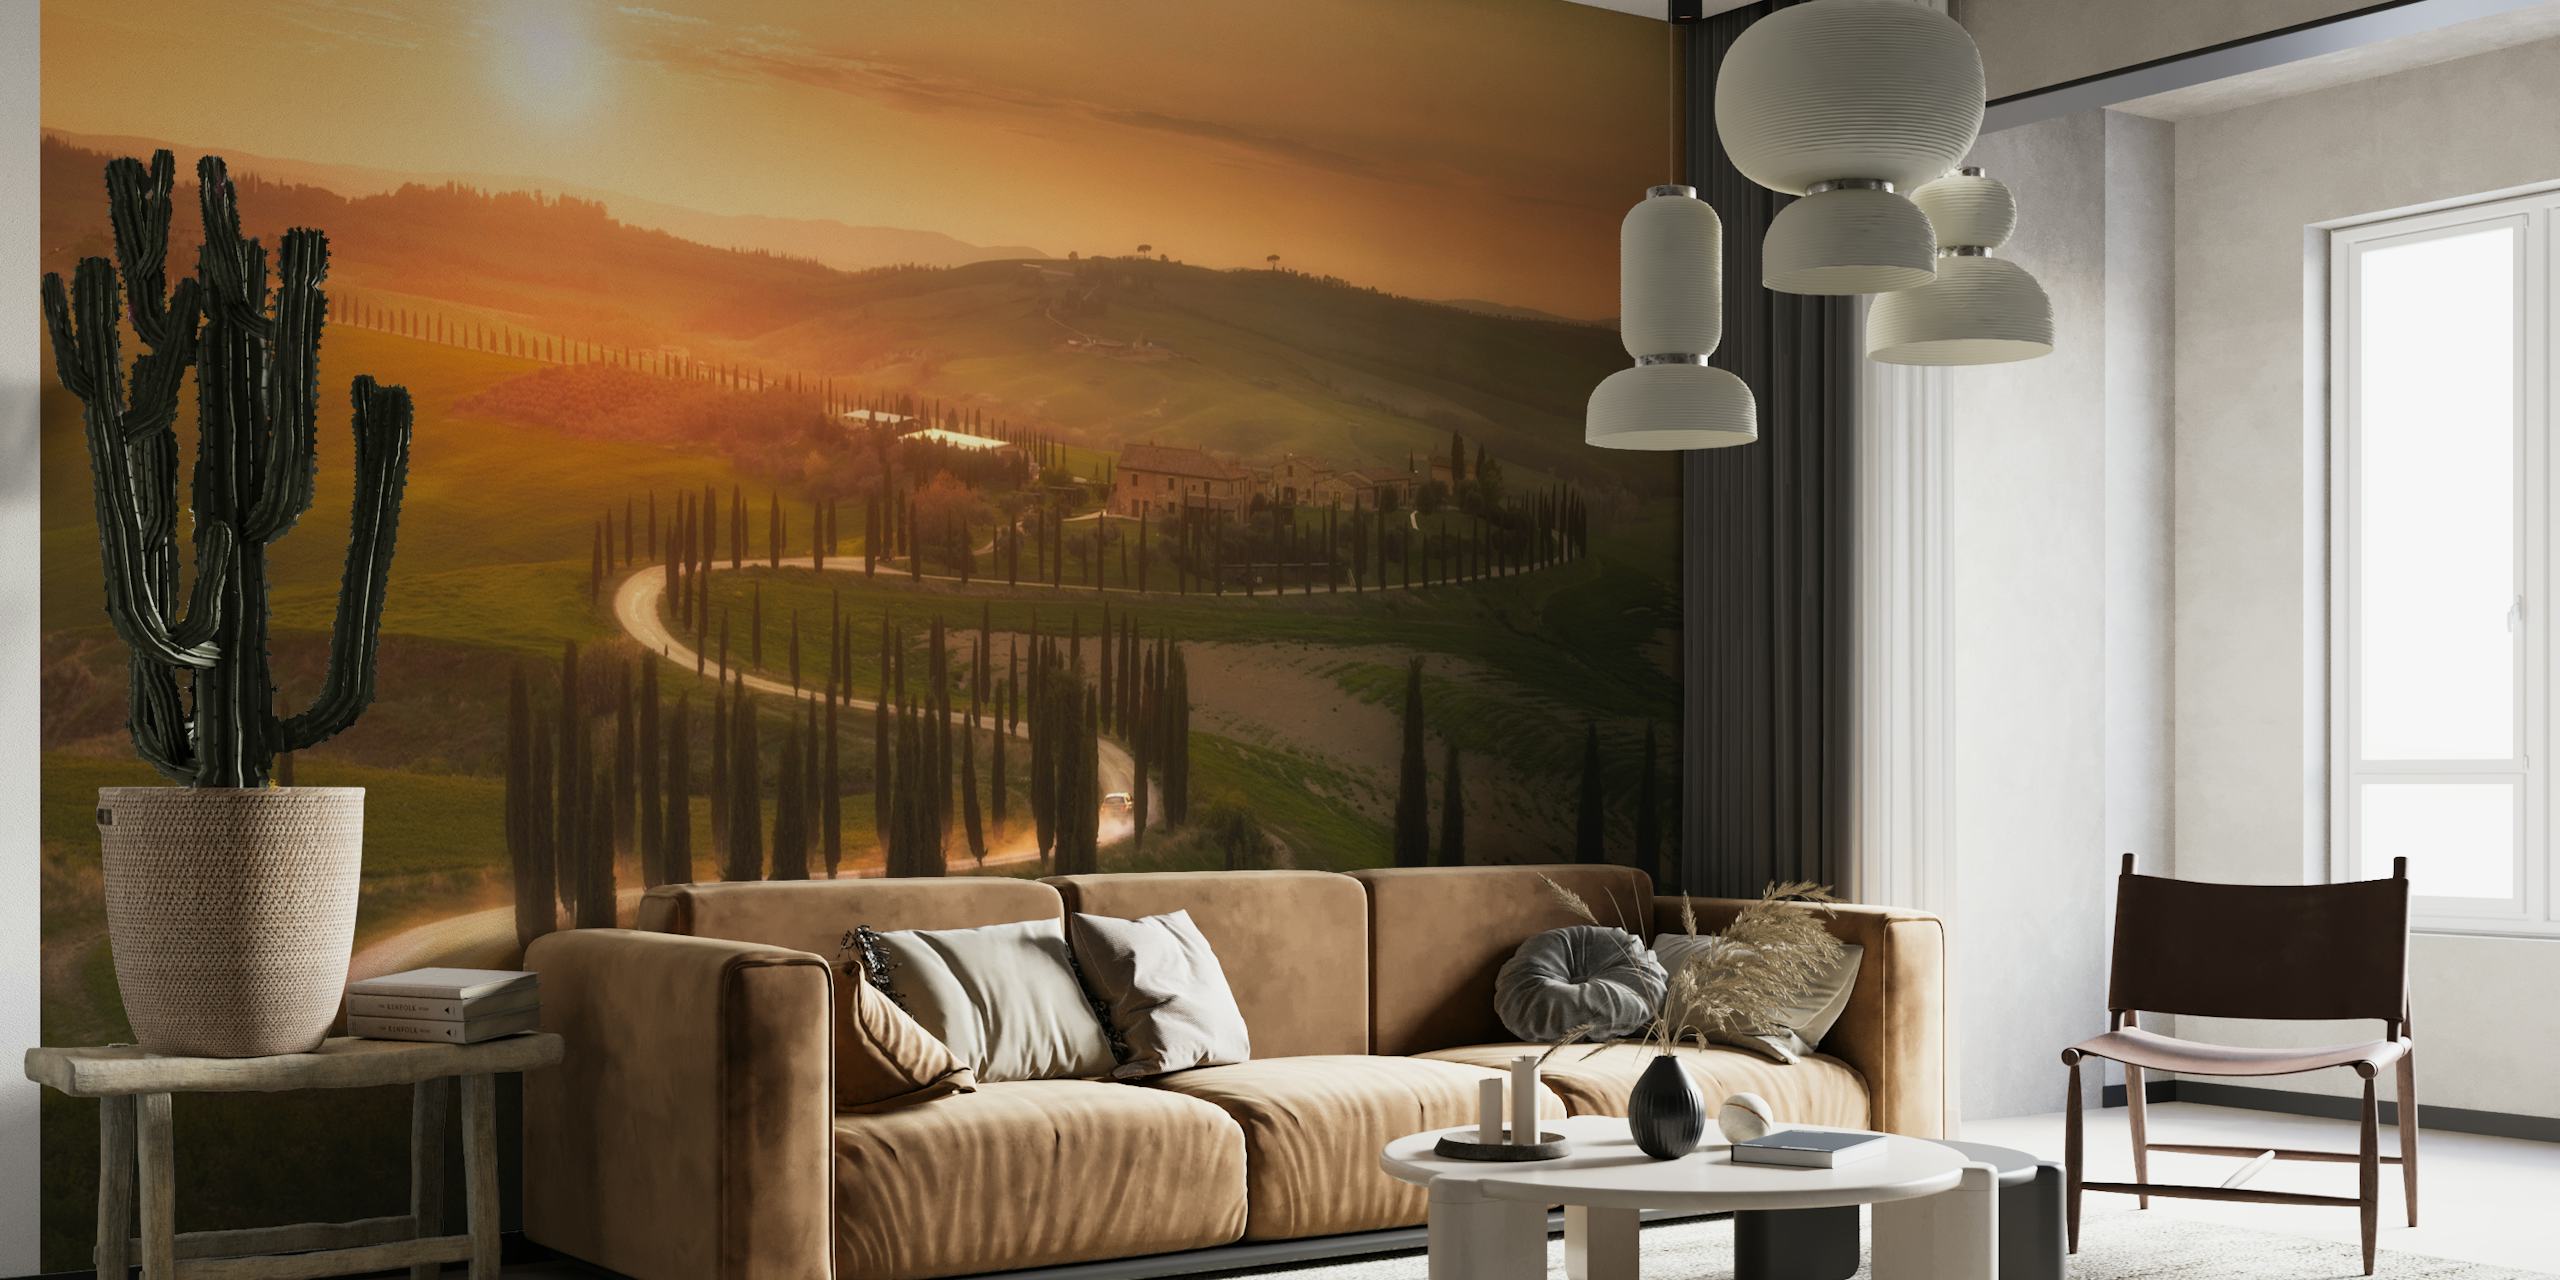 Zonsondergang boven de heuvels van Toscane, fotobehang met een schilderachtig avondlandschap.